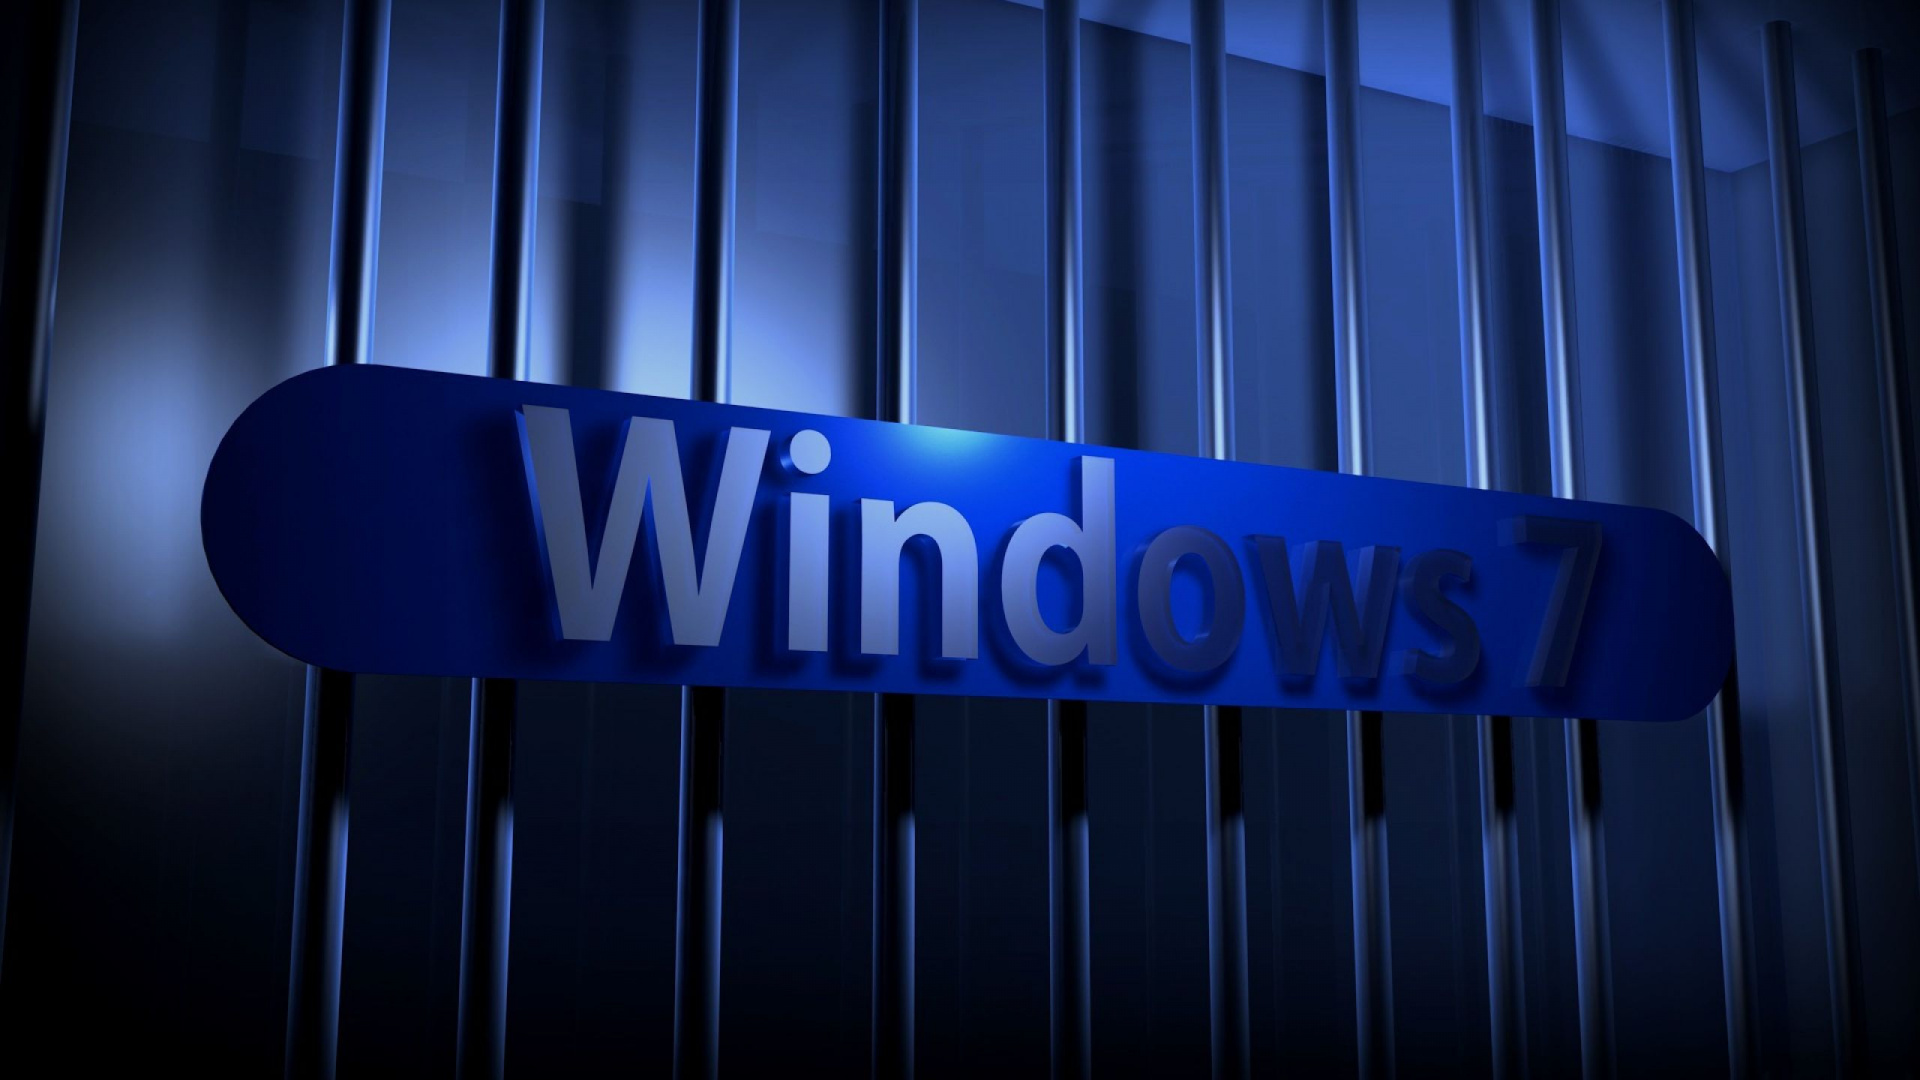 Windows7, 光, 电蓝色的, Windows10, Microsoft Windows 壁纸 1920x1080 允许